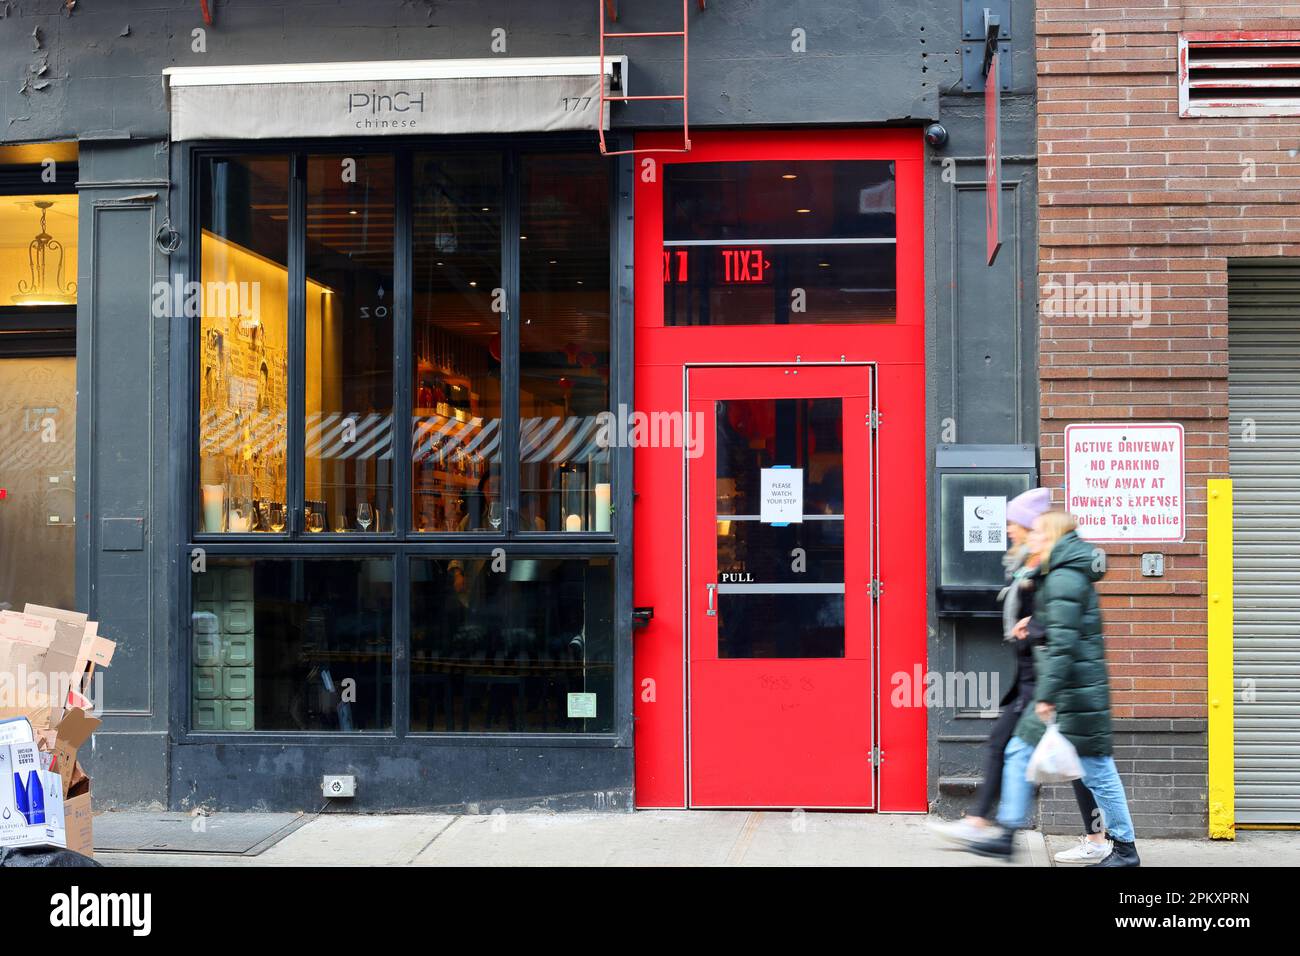 Pizzica cinese, 177 Prince St, New York, foto di un ristorante cinese nel quartiere SoHo di Manhattan. Foto Stock